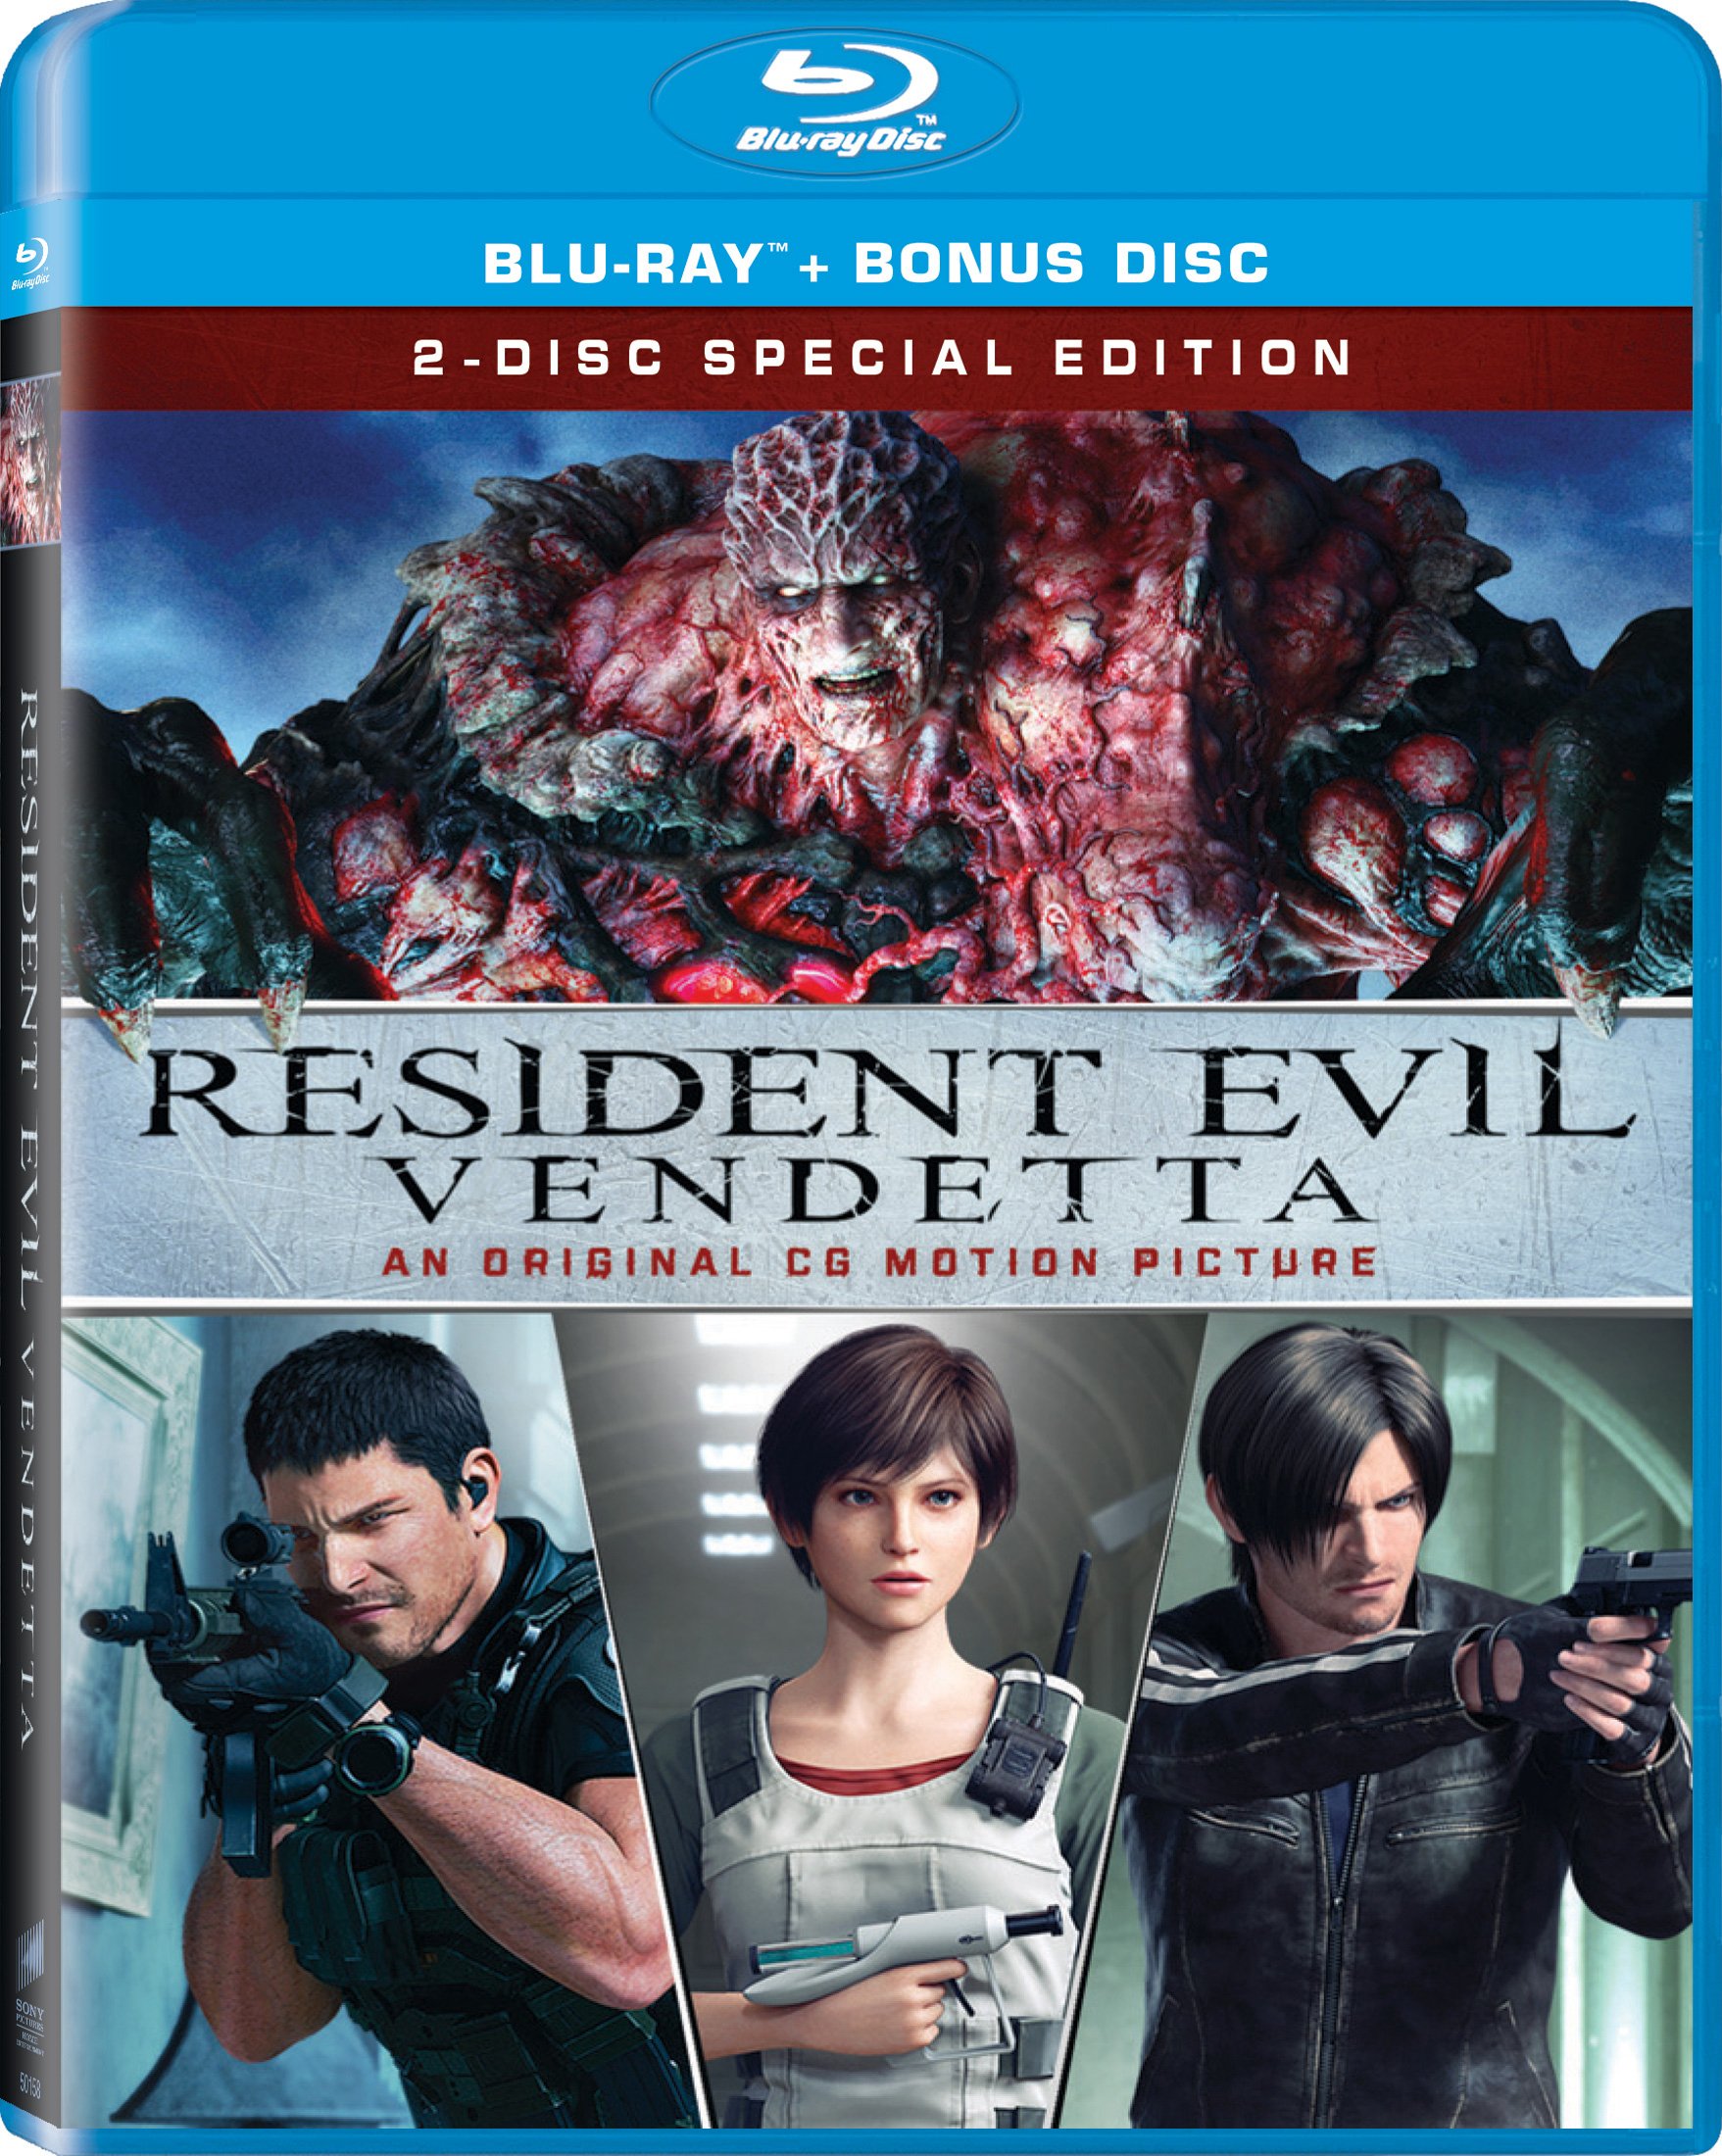 Resident evil dvd release date uk